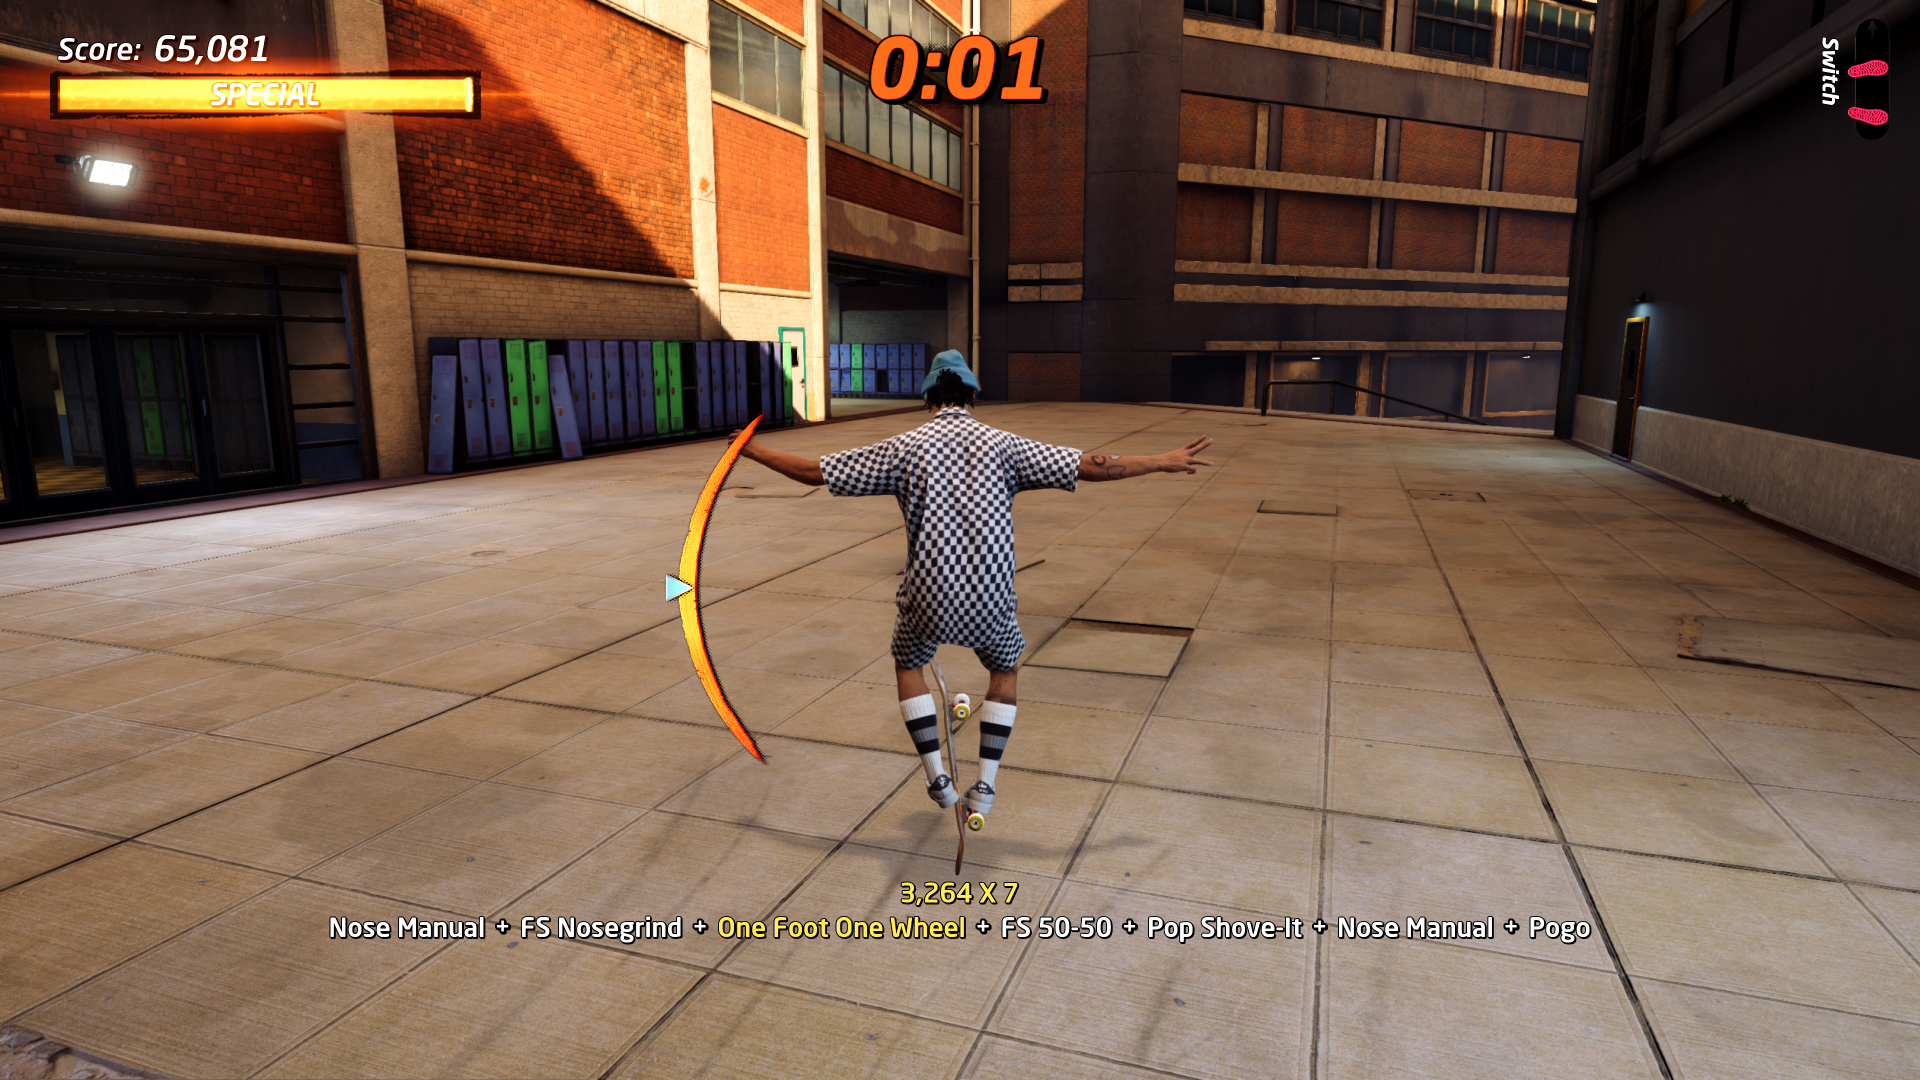 Você agora pode provar Tony Hawk's Pro Skater 1+2 de graça no Xbox